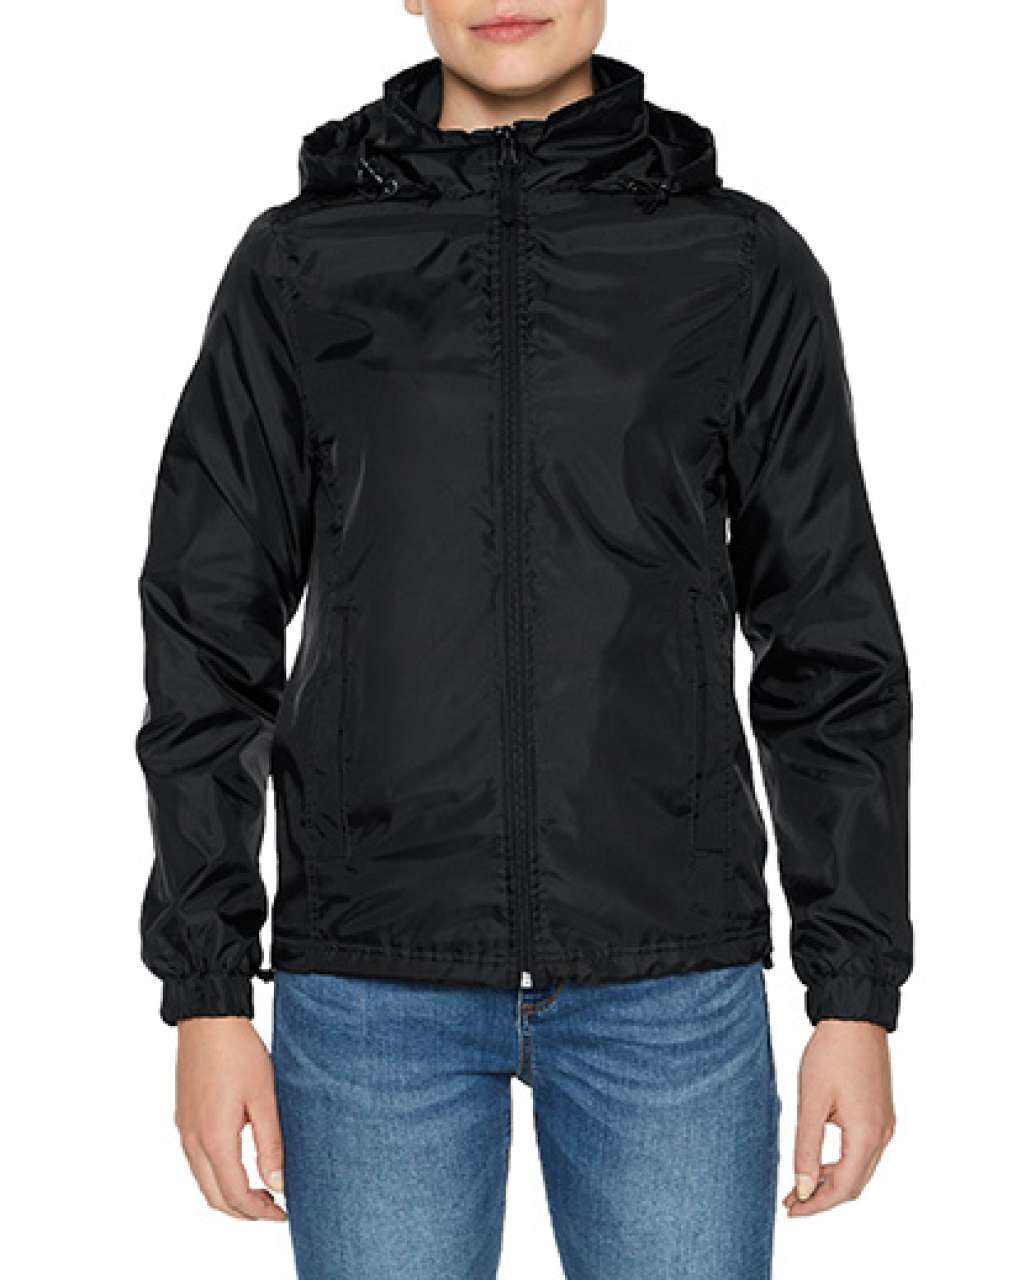 Gildan Hammer Ladies Windwear Jacket - black